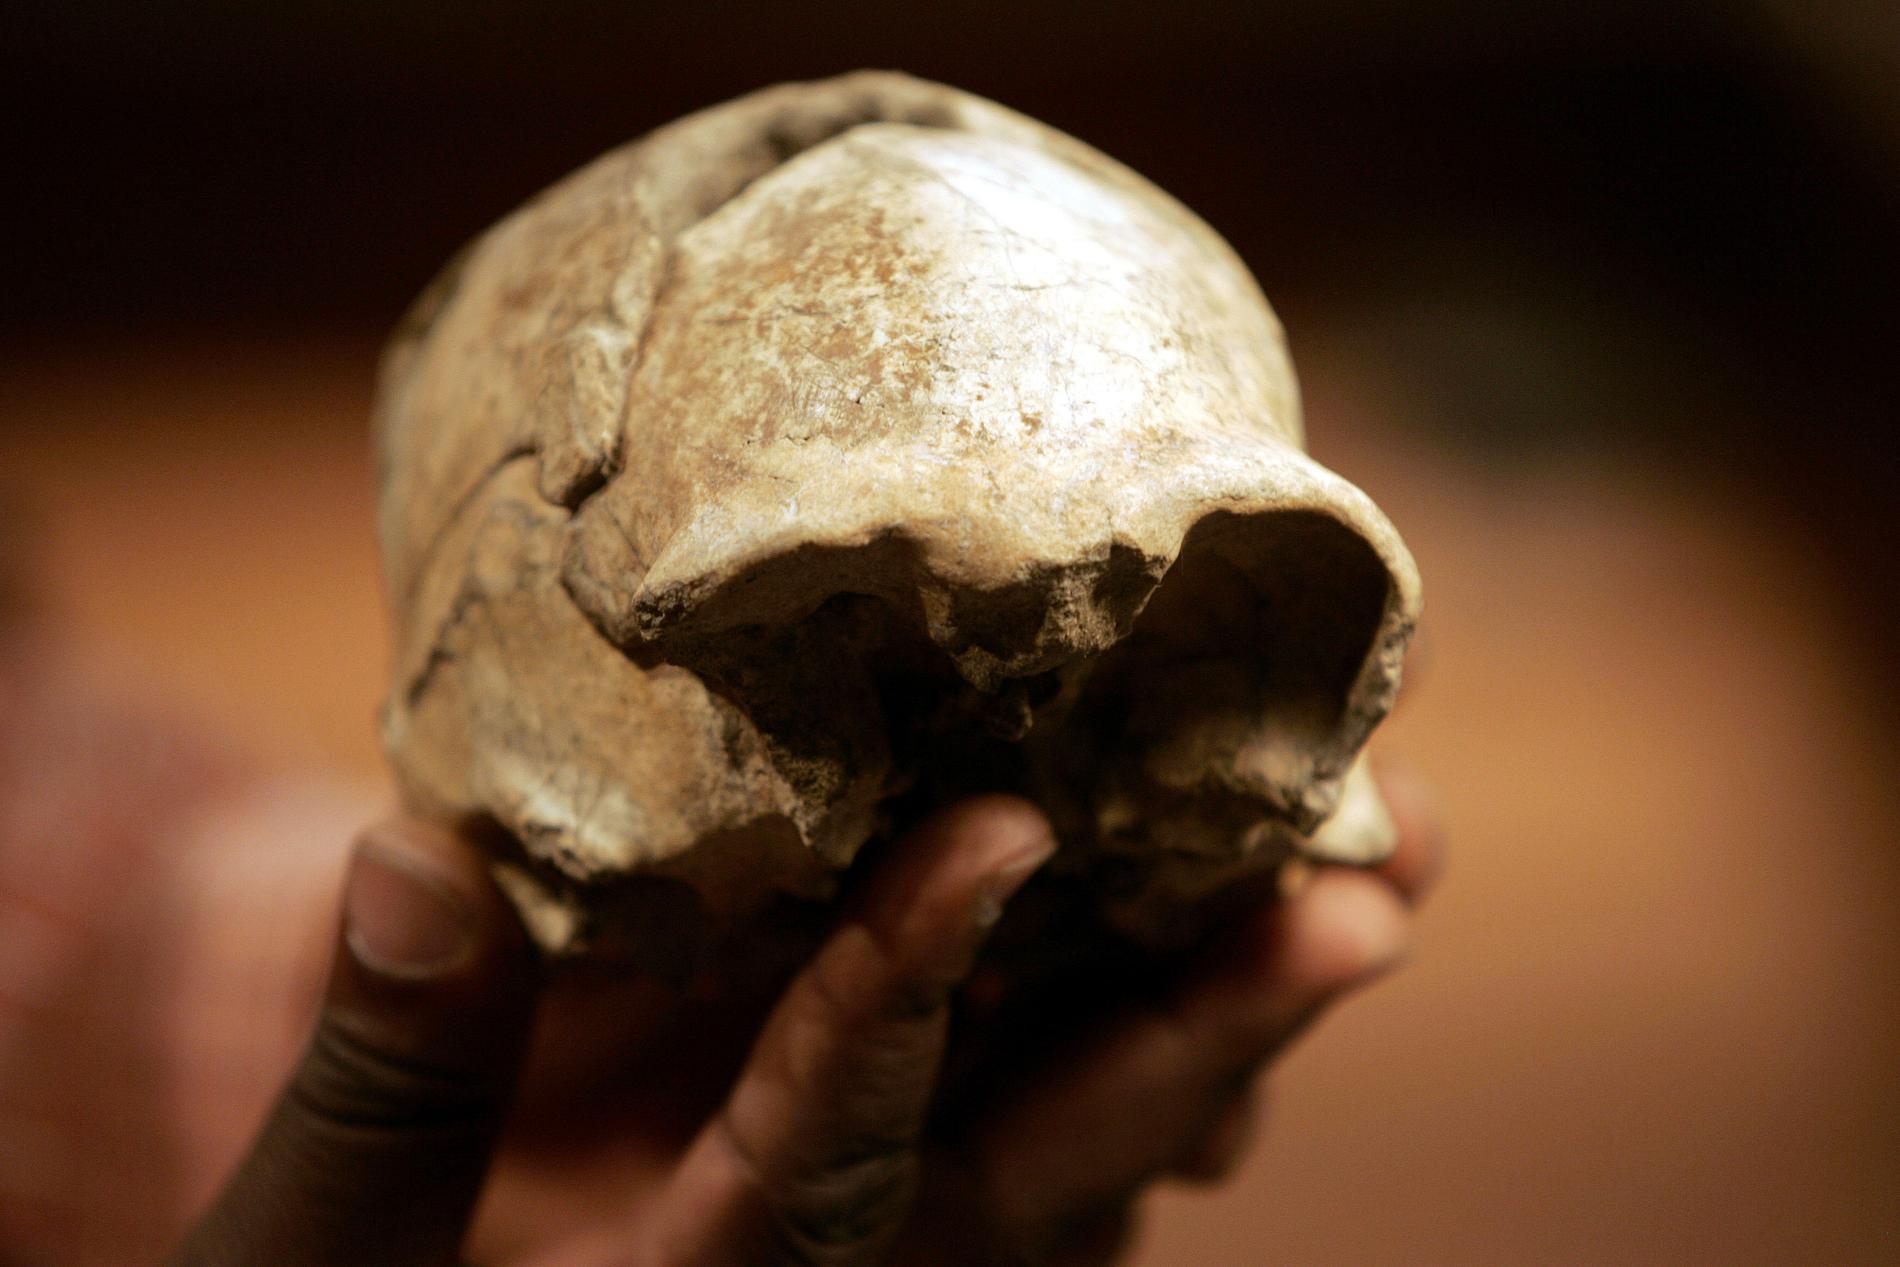 Den upprätta människan, Homo erectus, uppstod på den afrikanska kontinenten och spred sig sedan över världen, framför allt till Asien. Här syns ett nästan komplett kranium som hittades år 2000 vid Turkanasjön i Kenya.